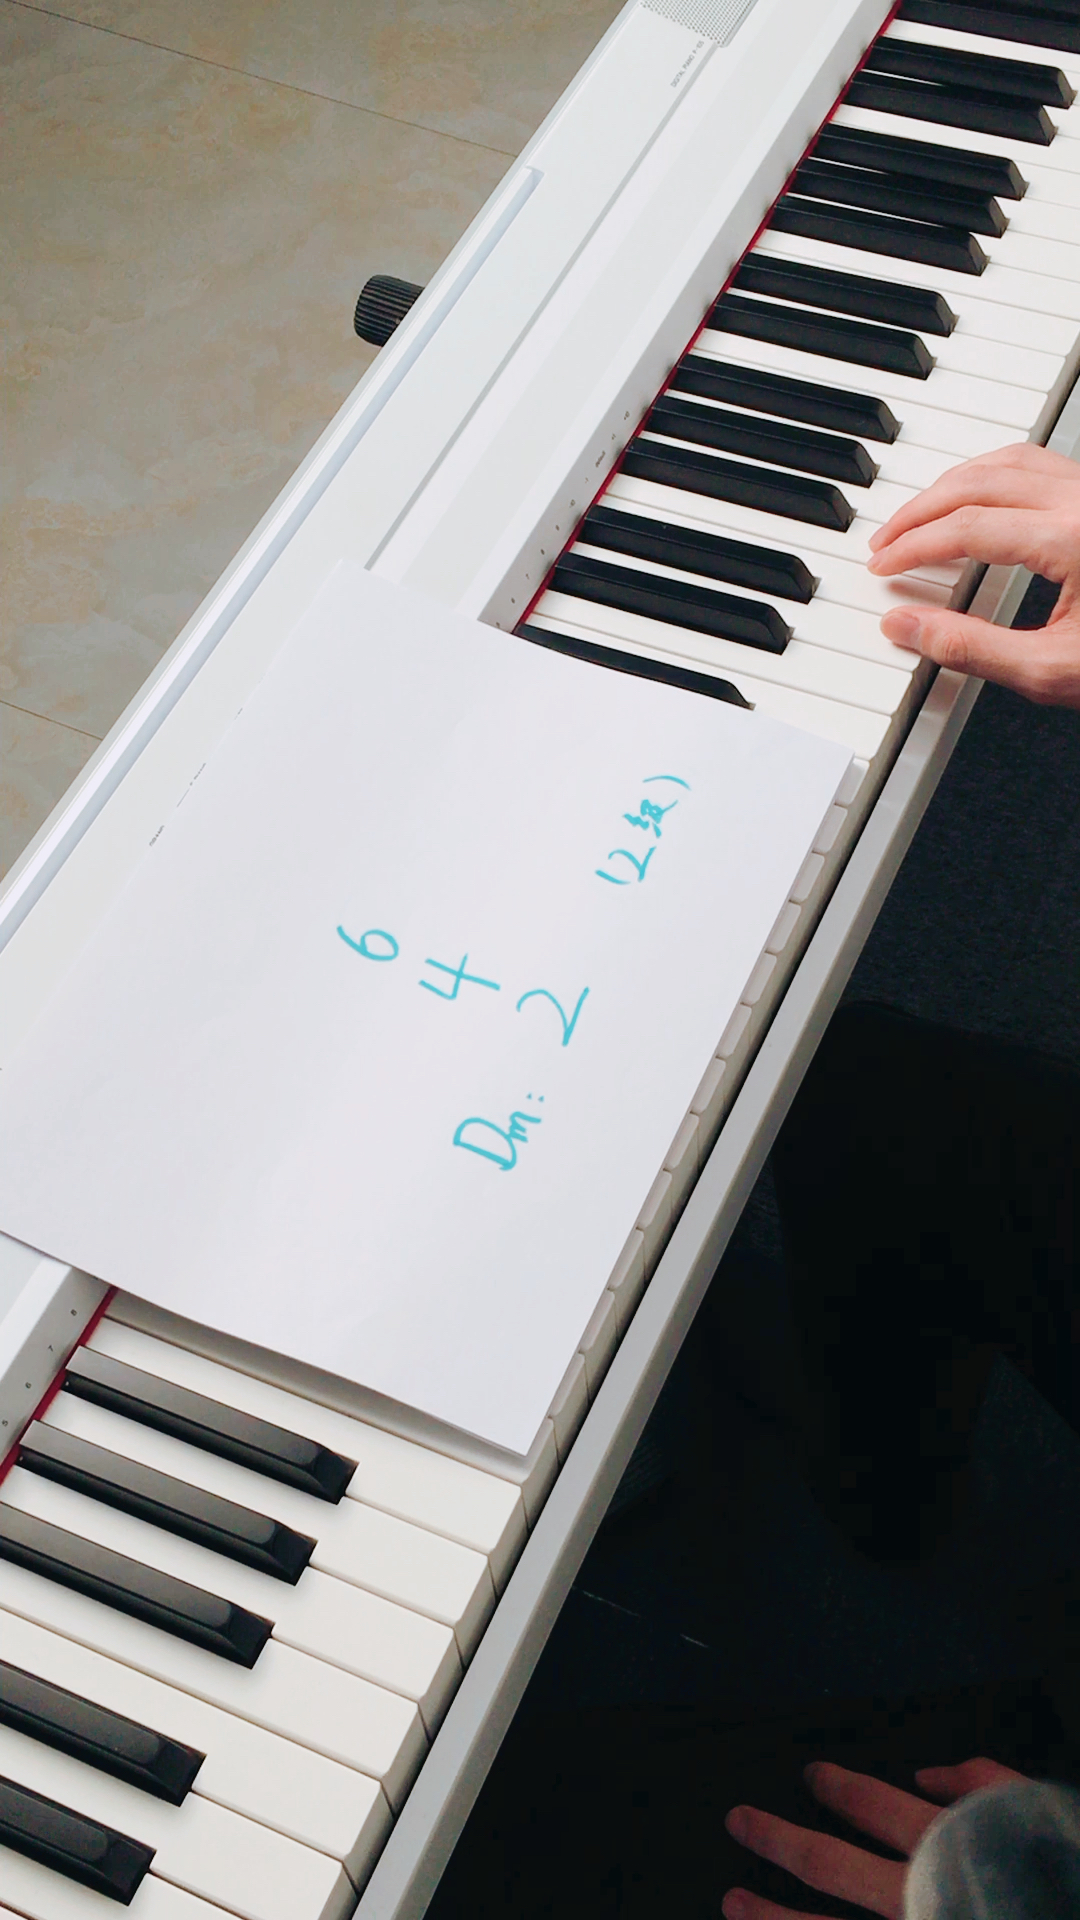 零基础学钢琴,10秒学会弹钢琴dm和弦